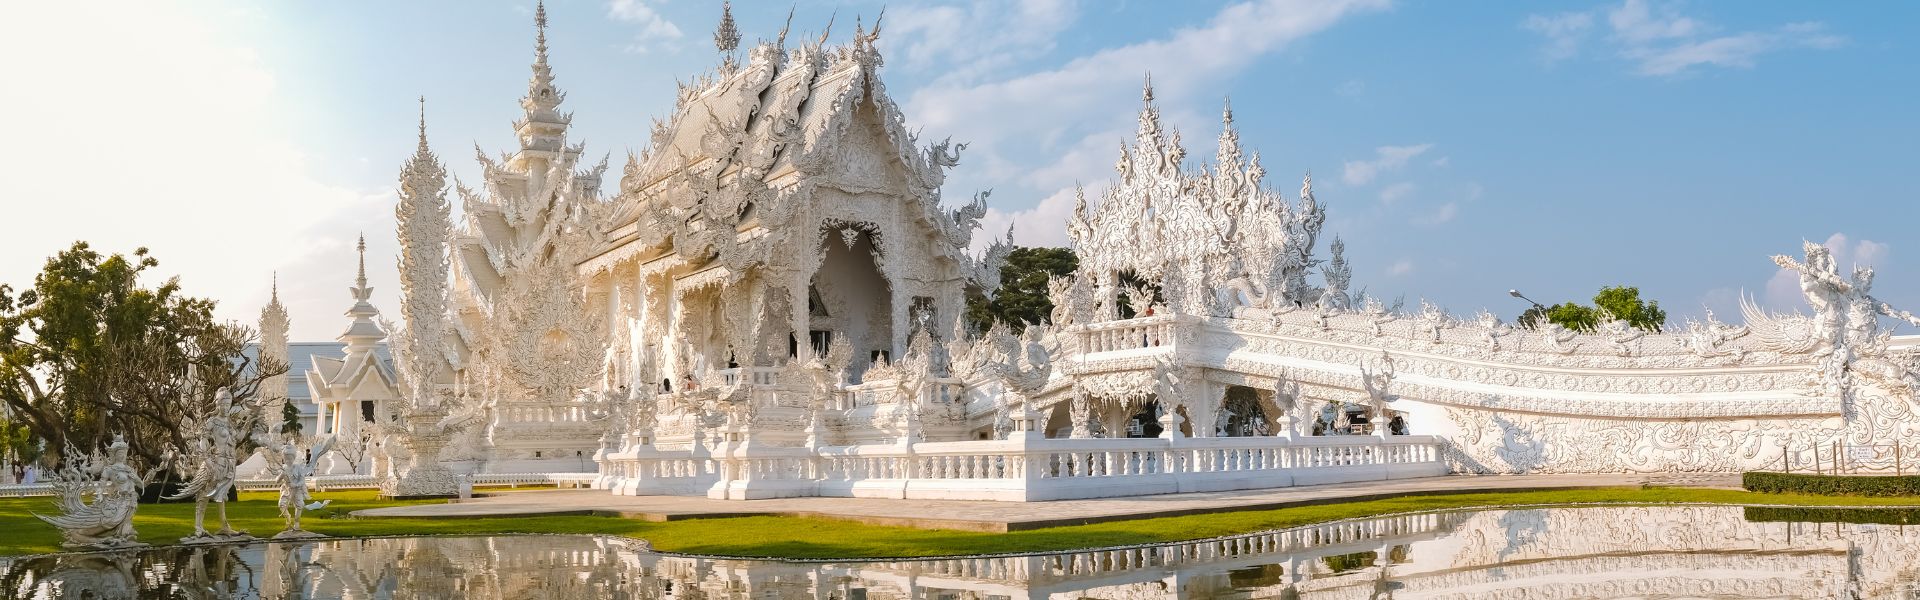 Chiang Rai - Consejos de viaje | Guía de viajes a Tailandia